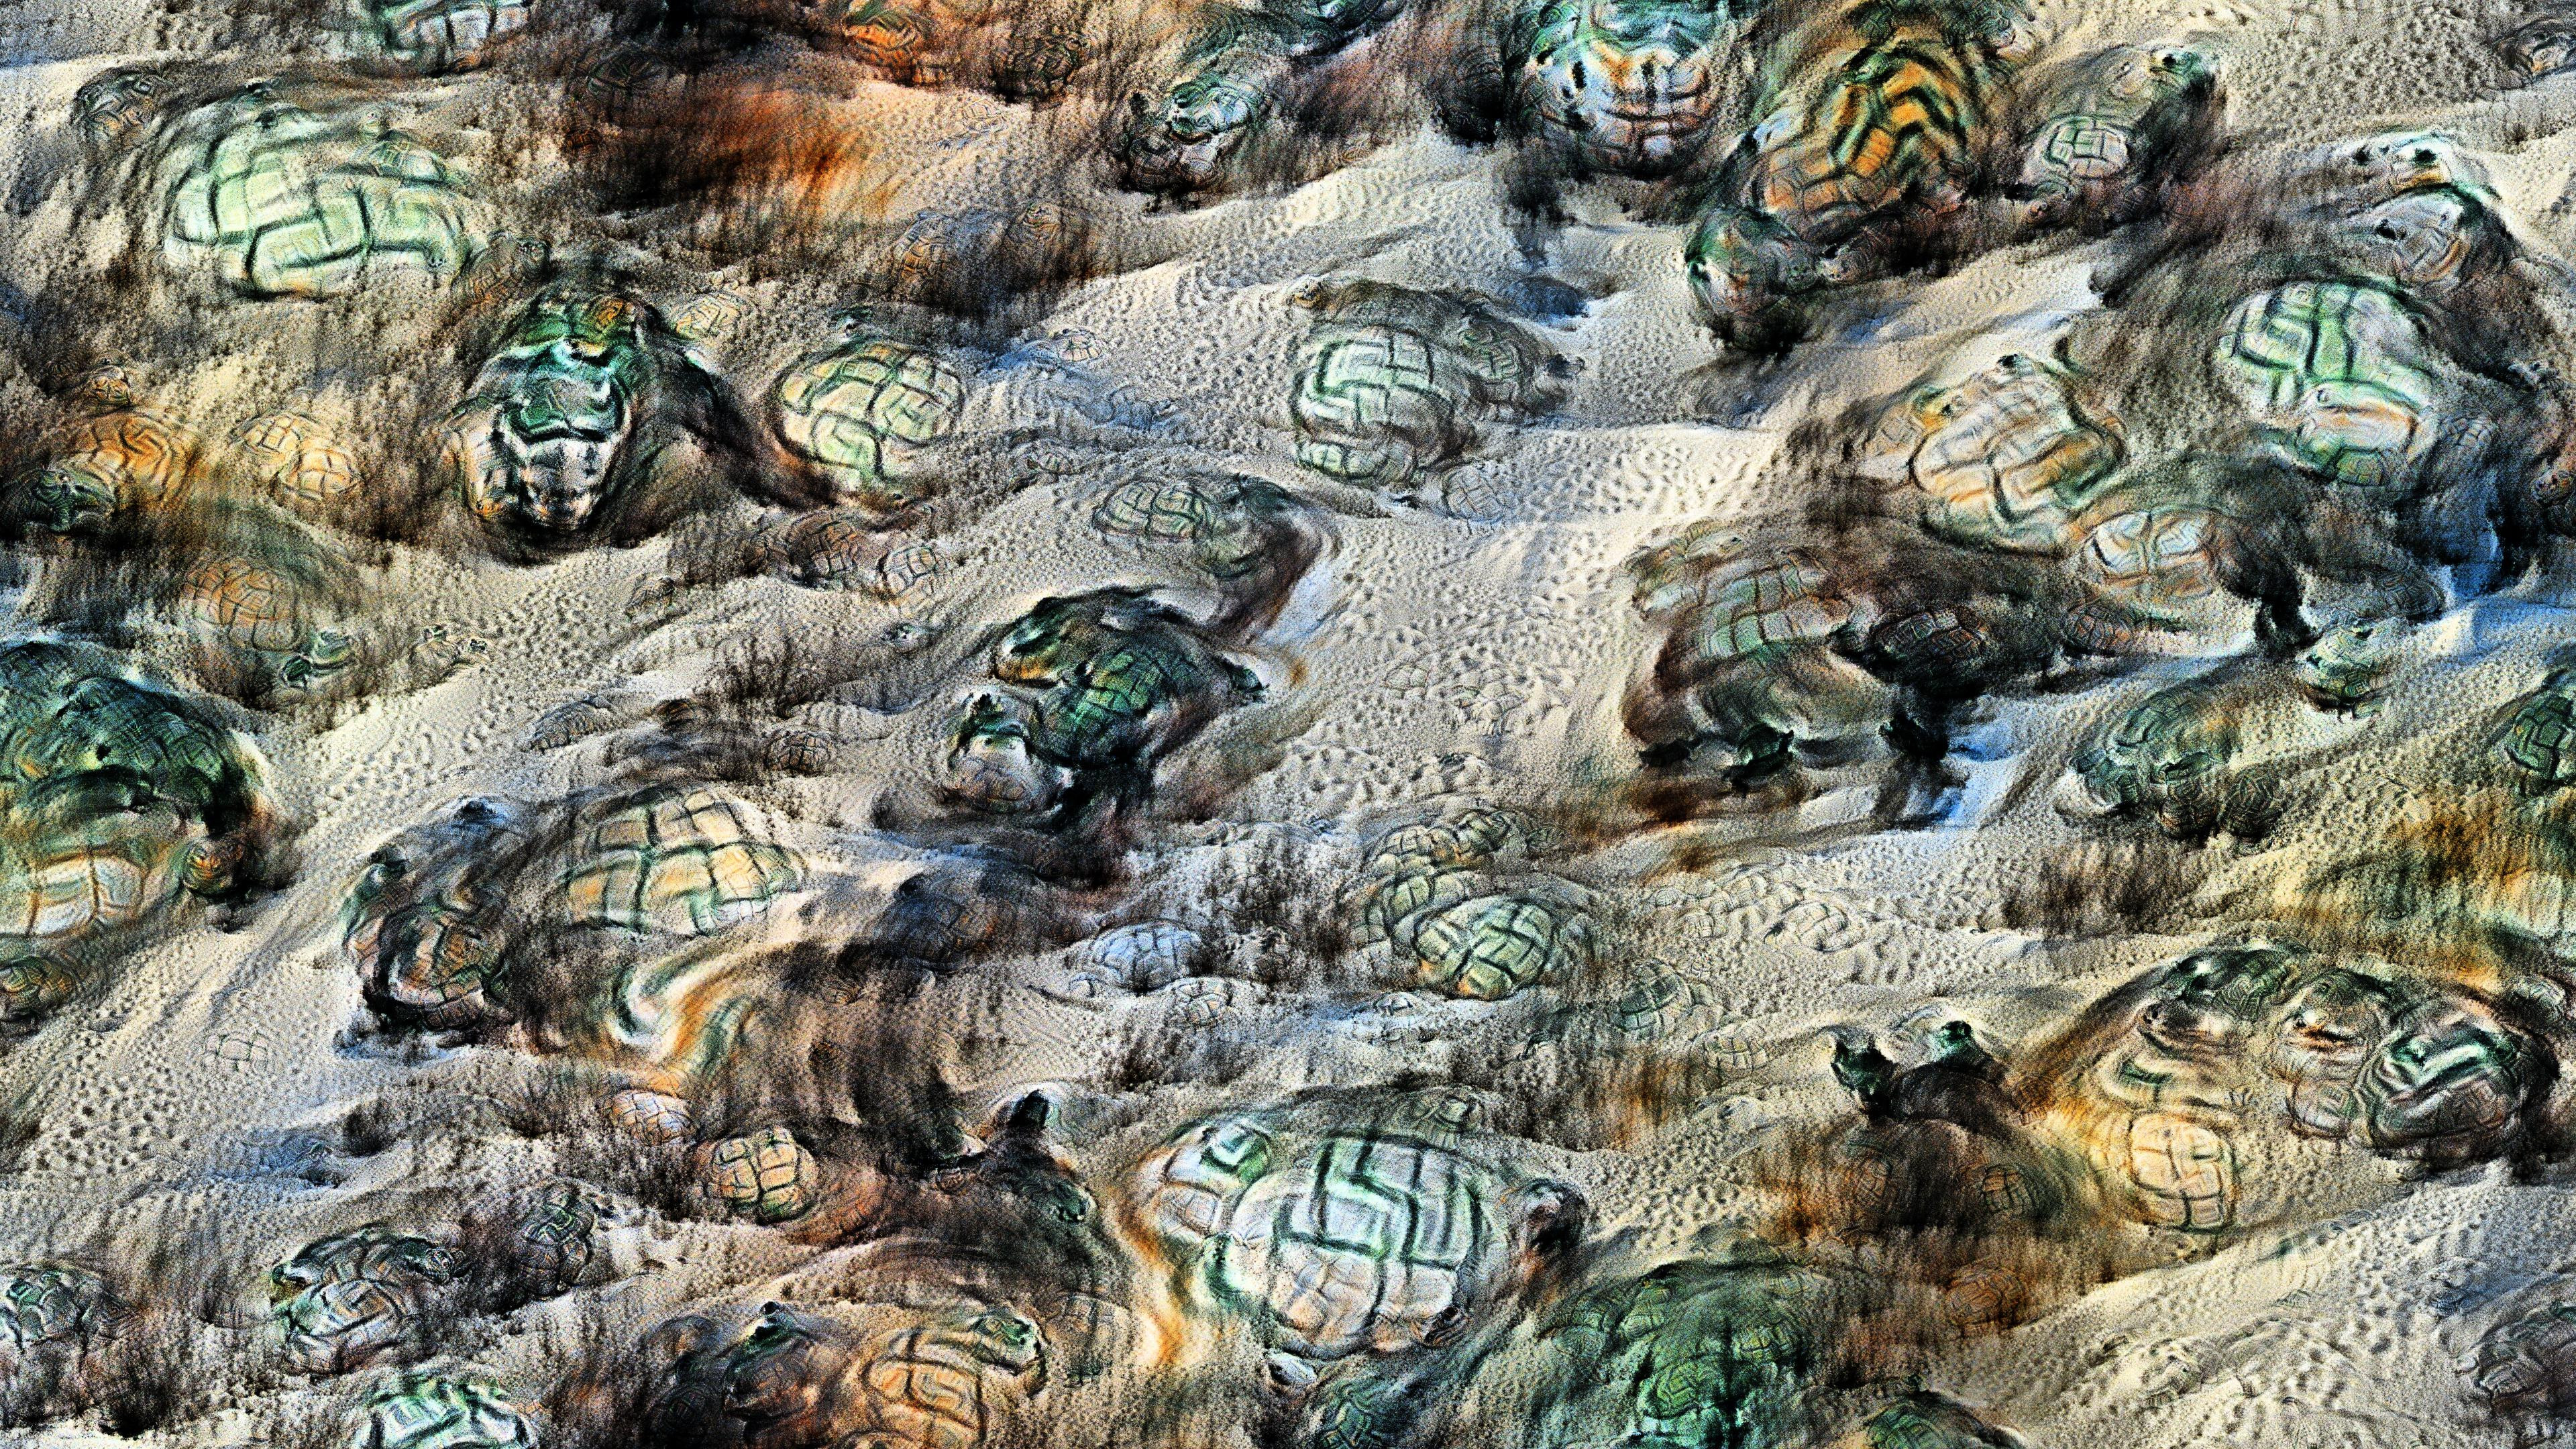 Turtles on the sand, Vertebrata series